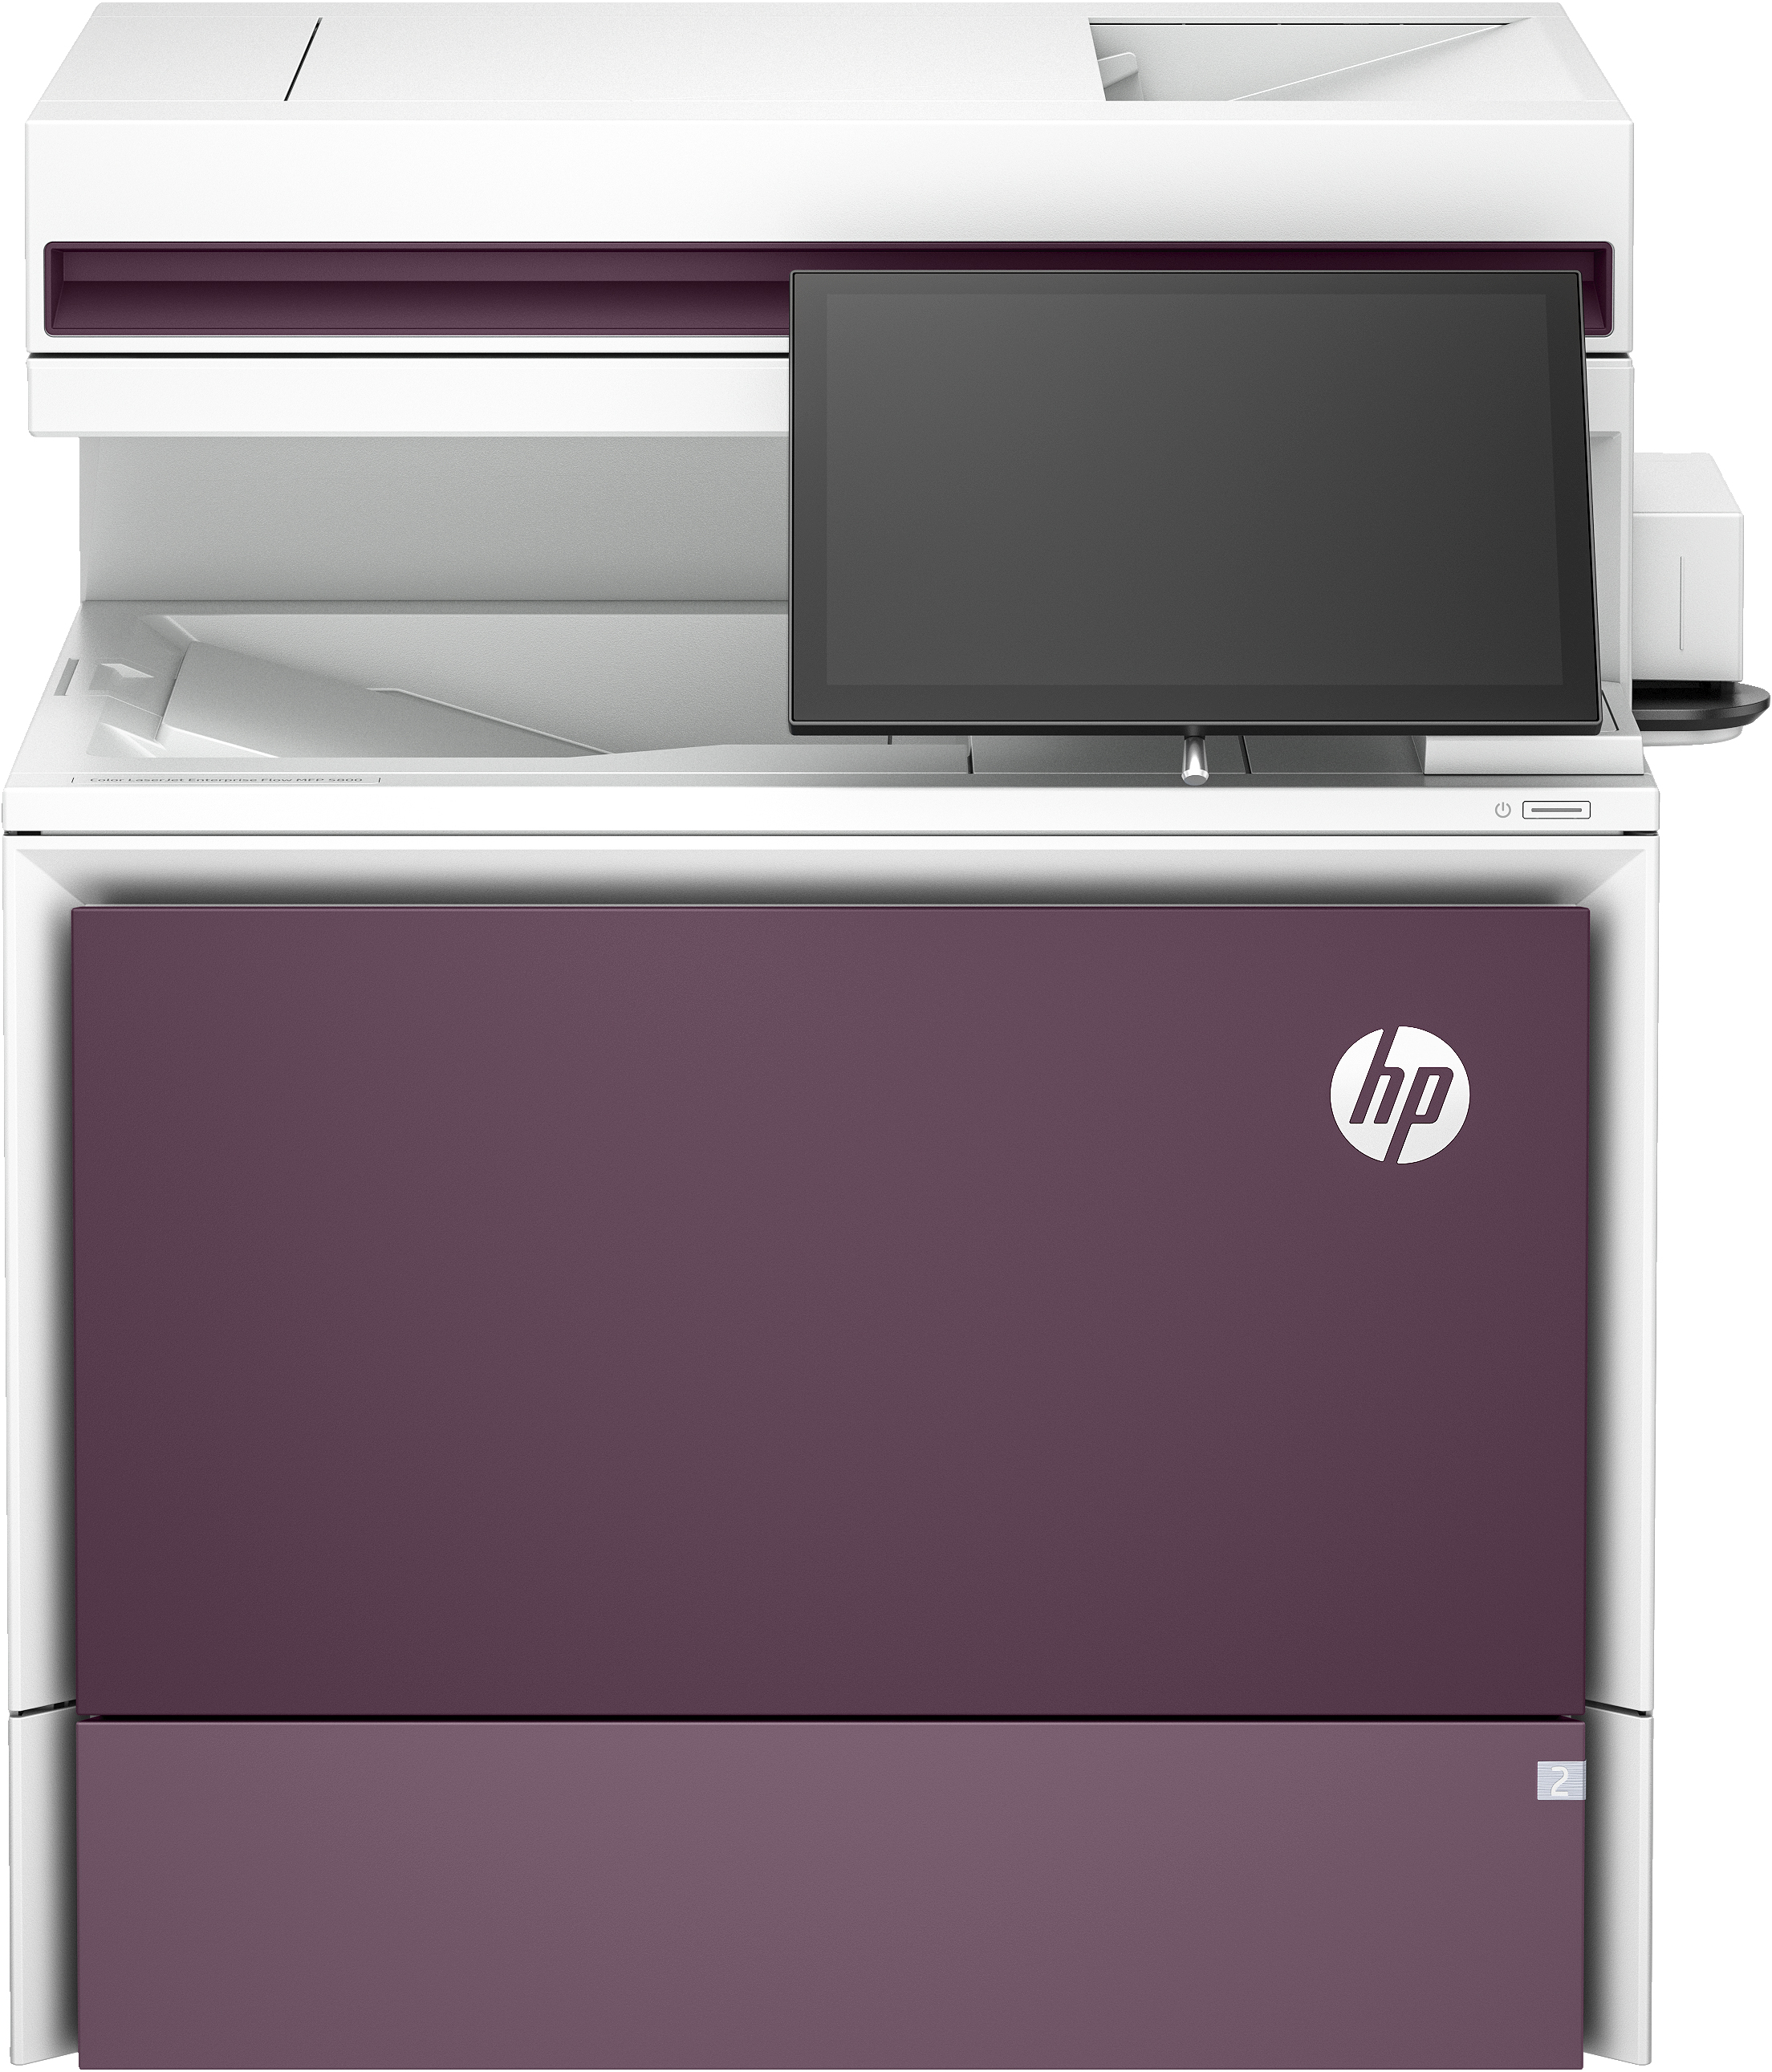 HP Color LaserJet Enterprise Flow Imprimante MFP 5800zf, Impression, copie, scan, fax, Chargeur automatique de documents. Bacs haute capacité en option. Écran tactile. Cartouche TerraJet